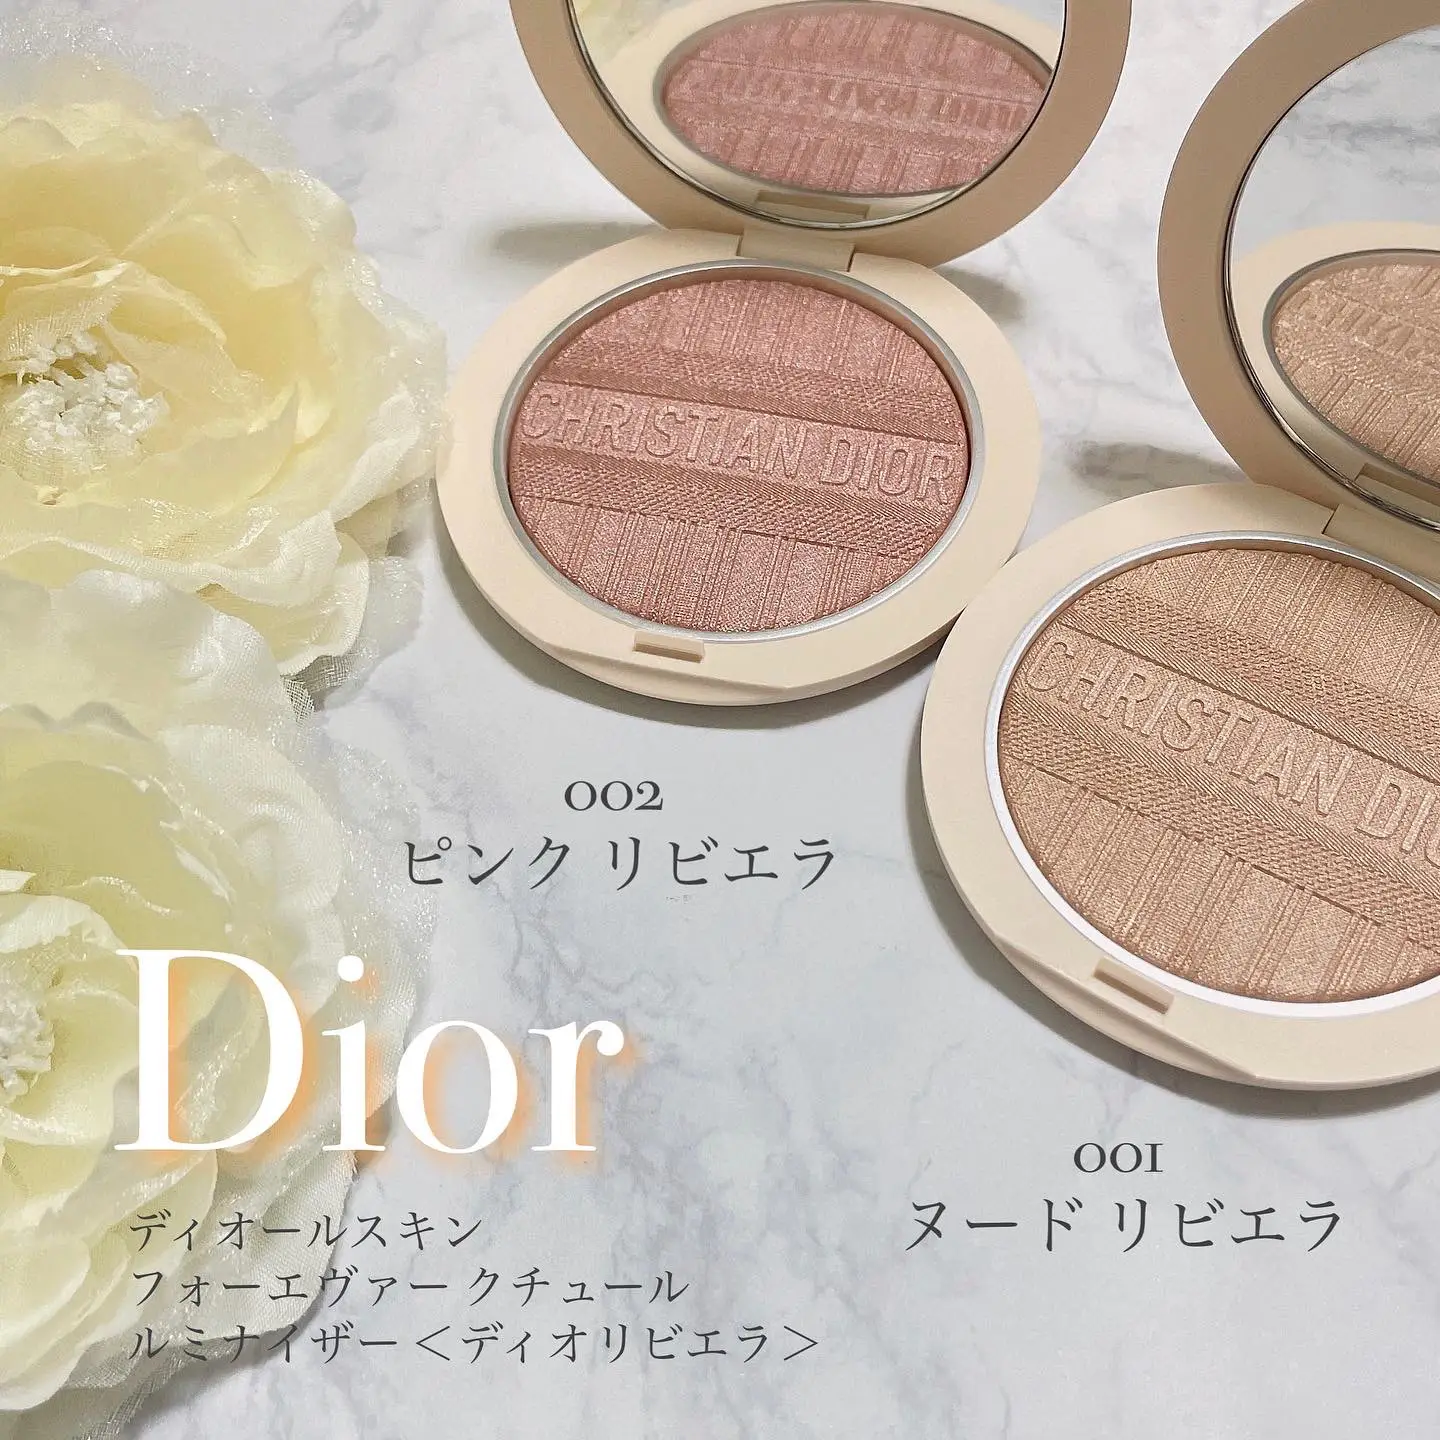 Dior サマーコレクション<ディオリビエラ> | momono_uchiが投稿した